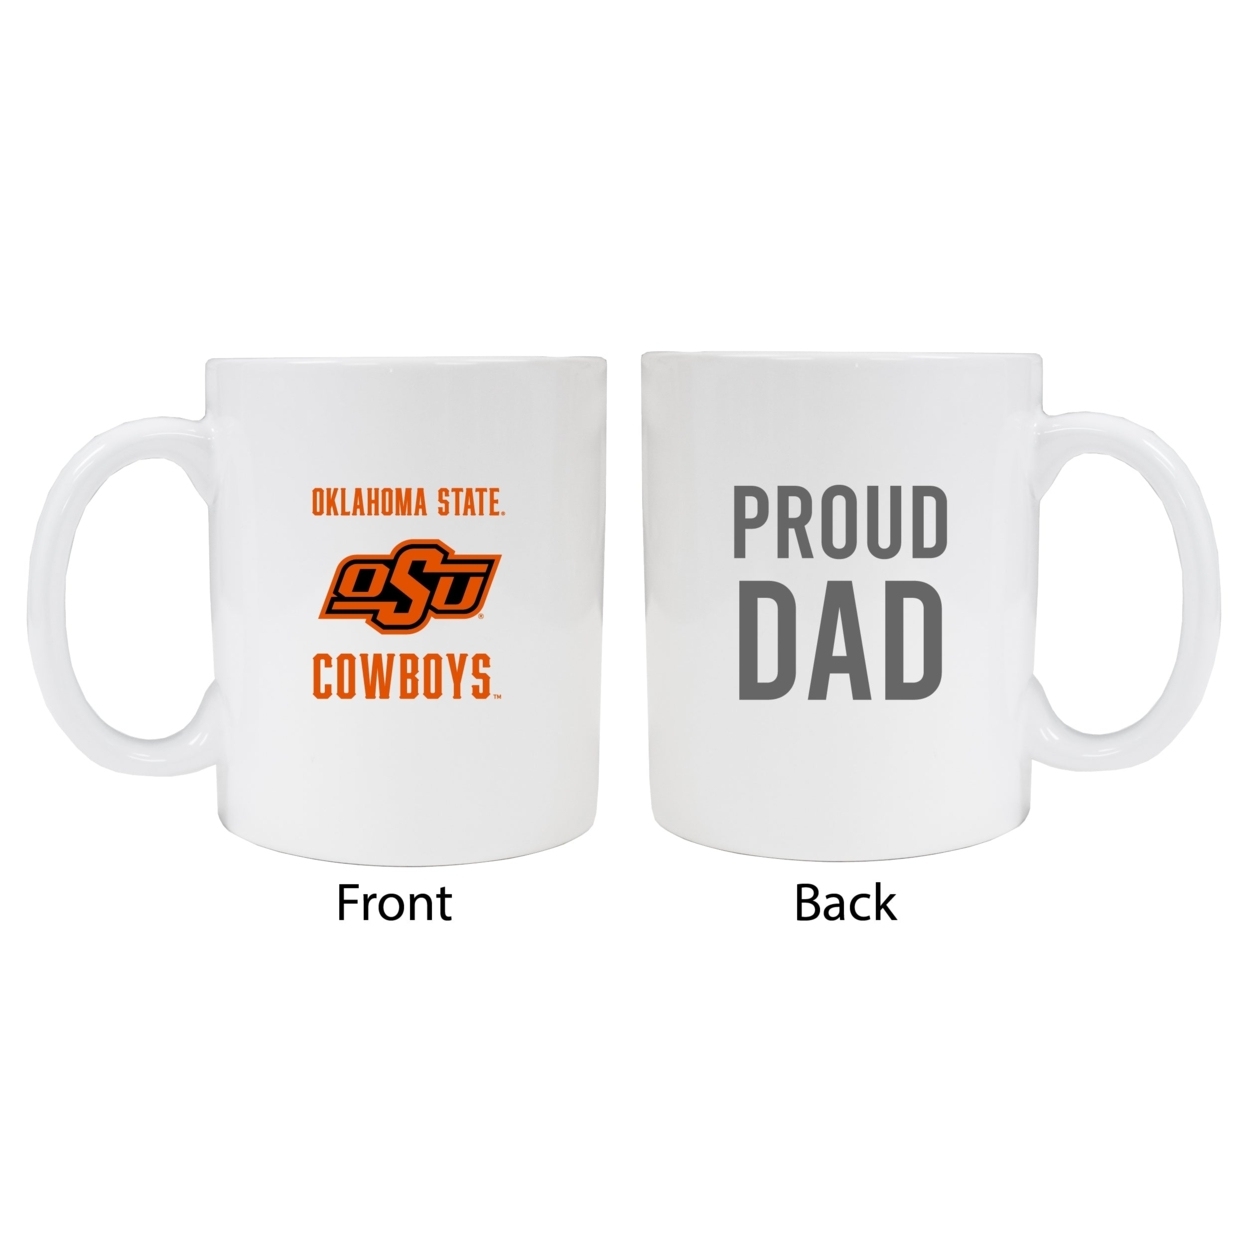 Oklahoma State Cowboys Proud Dad Ceramic Coffee Mug - White (2 Pack)